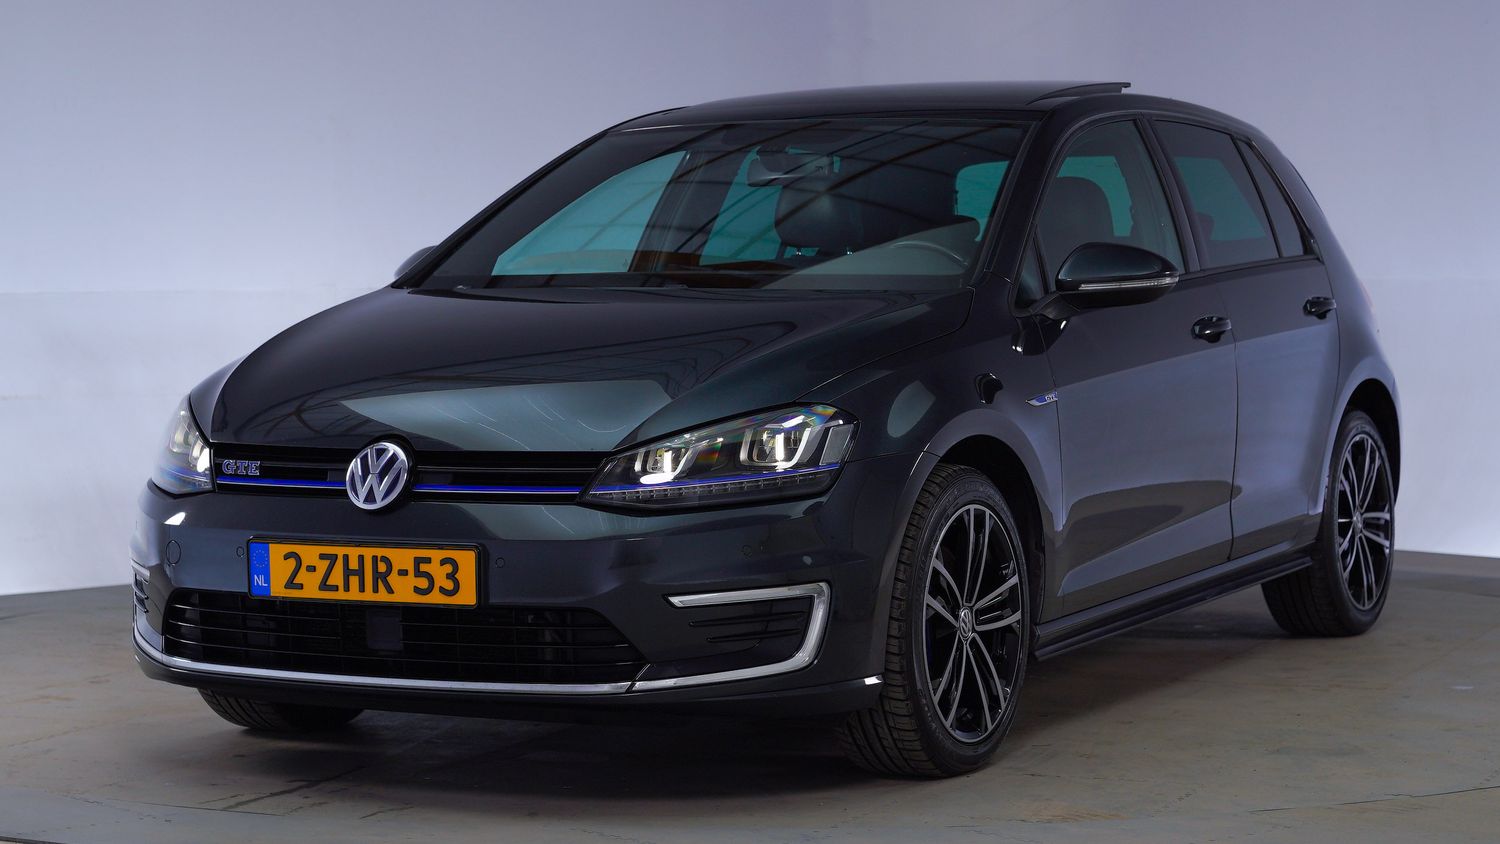 Volkswagen Golf Hatchback 2015 2-ZHR-53 1